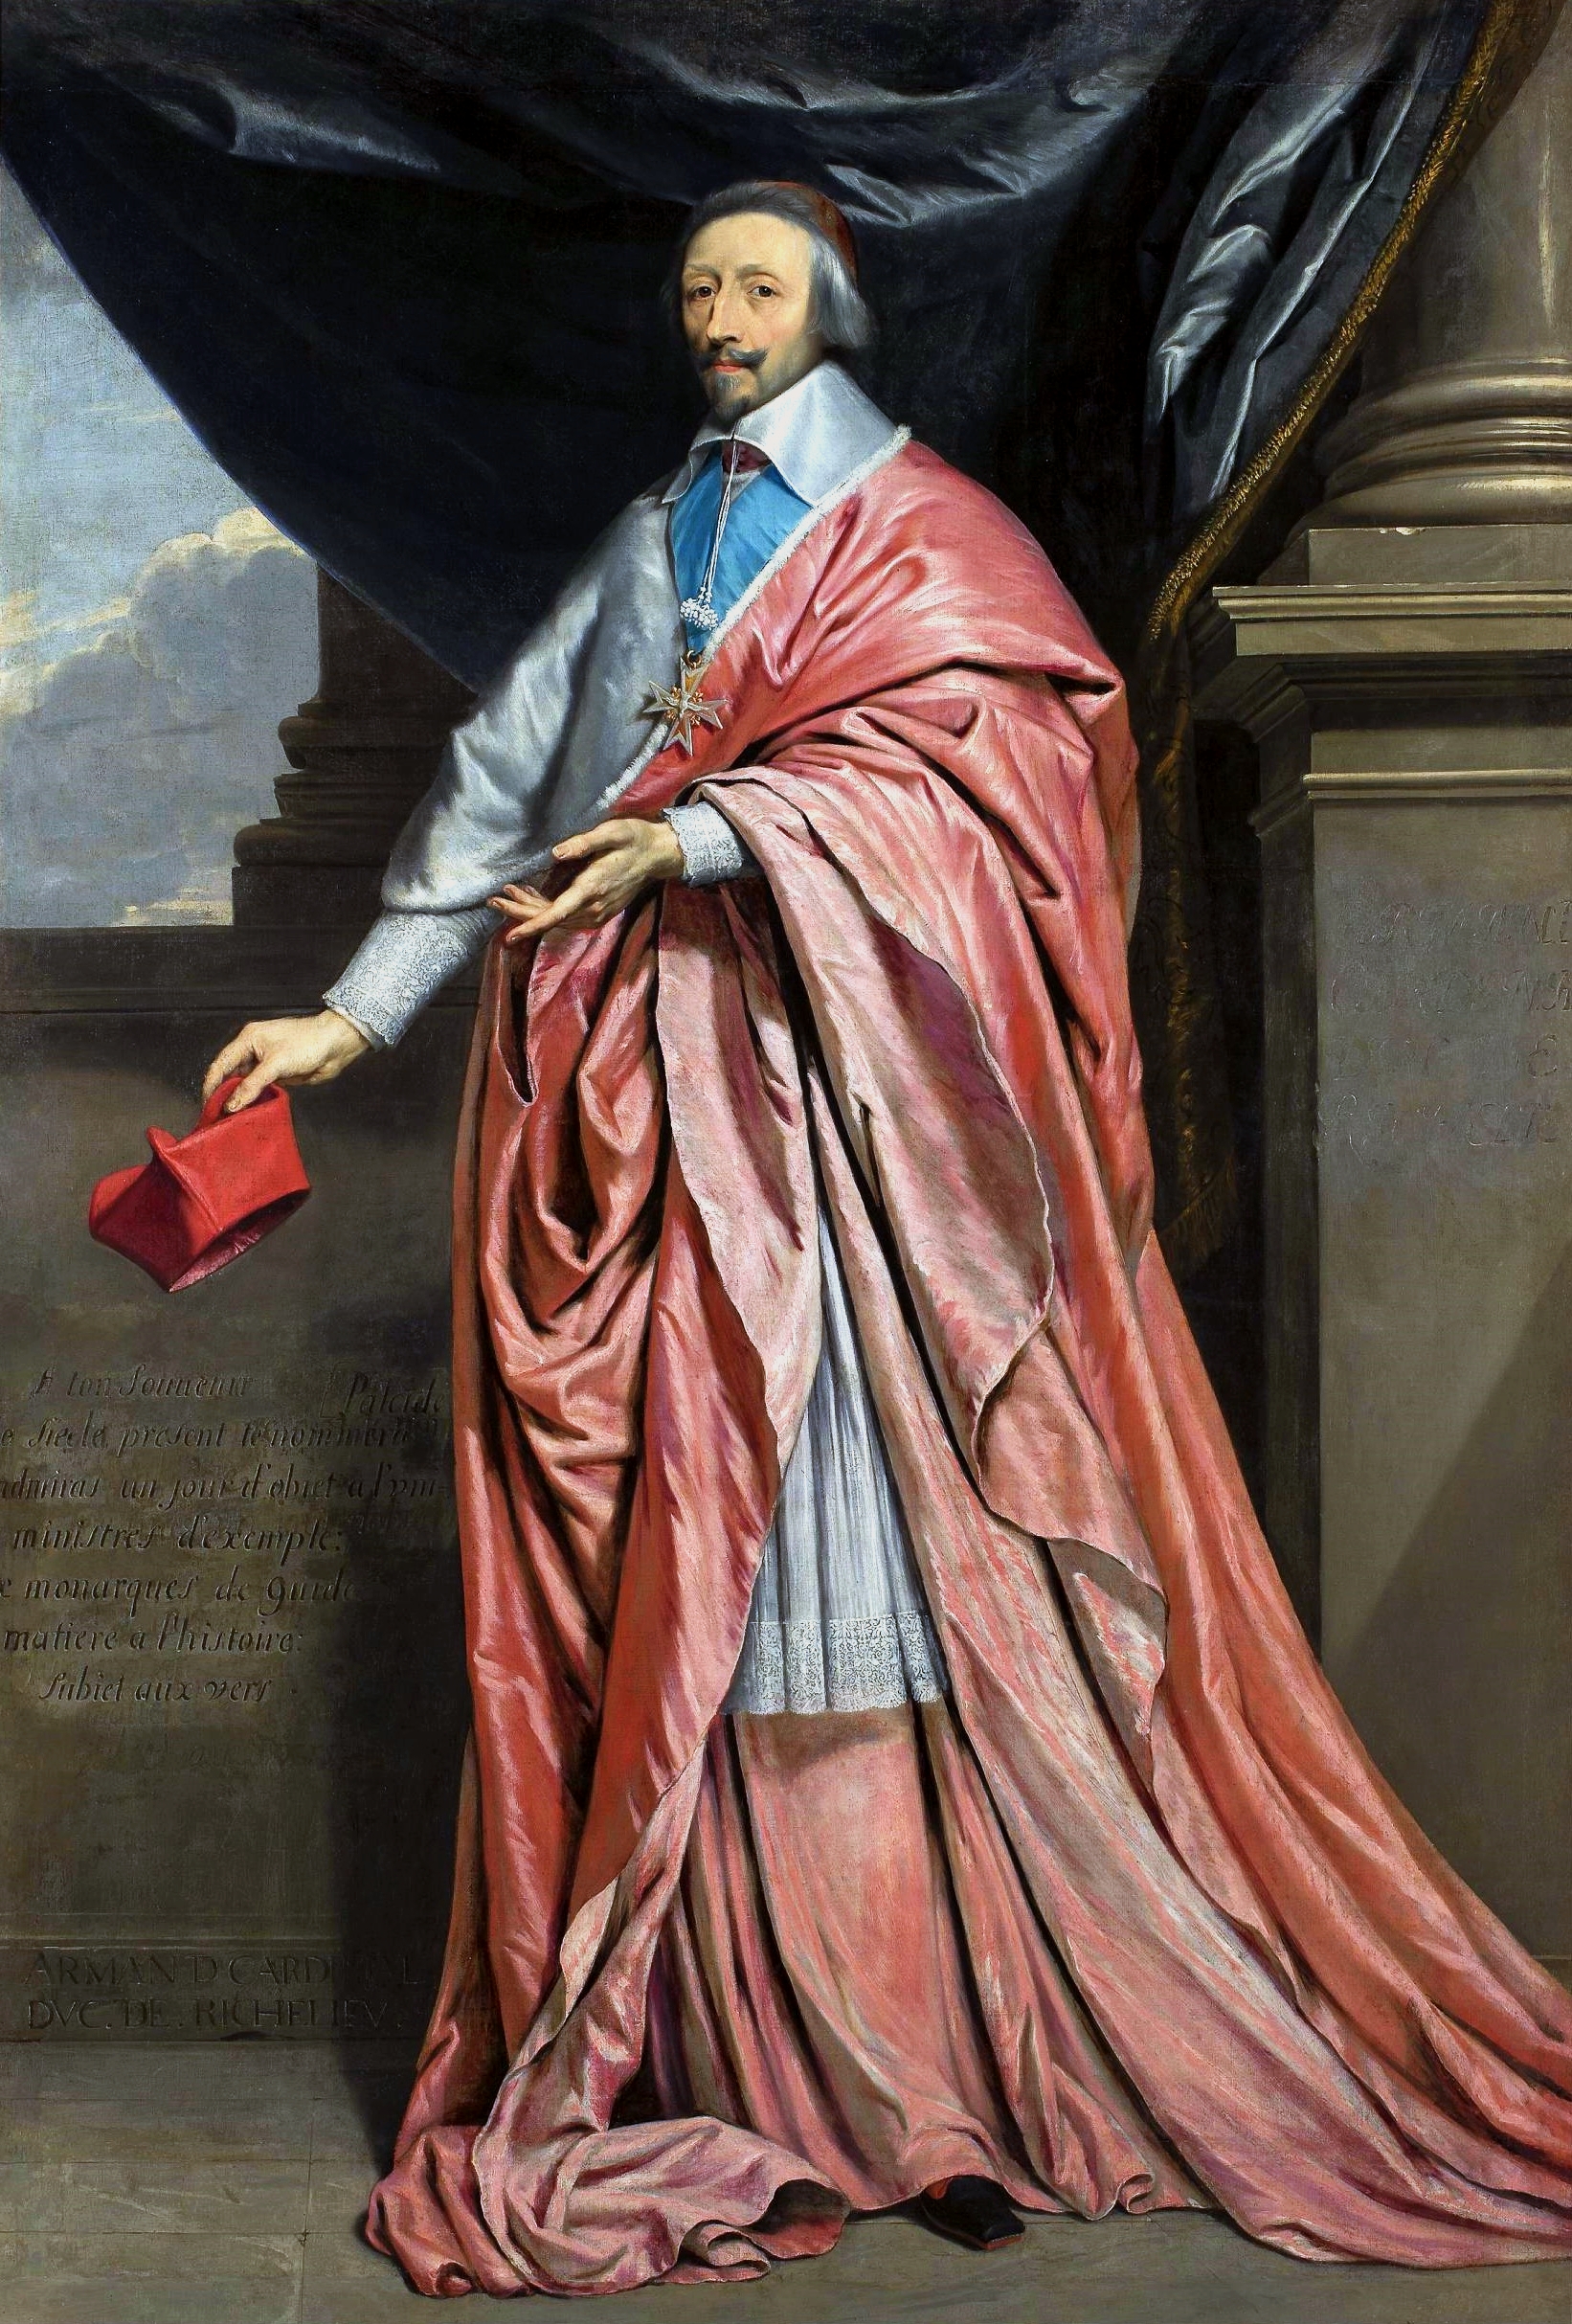 Retrato del Cardenal Richelieu by Philippe de Champaigne - circa 1640 - 225 × 156 cm Museo Nacional de Varsovia